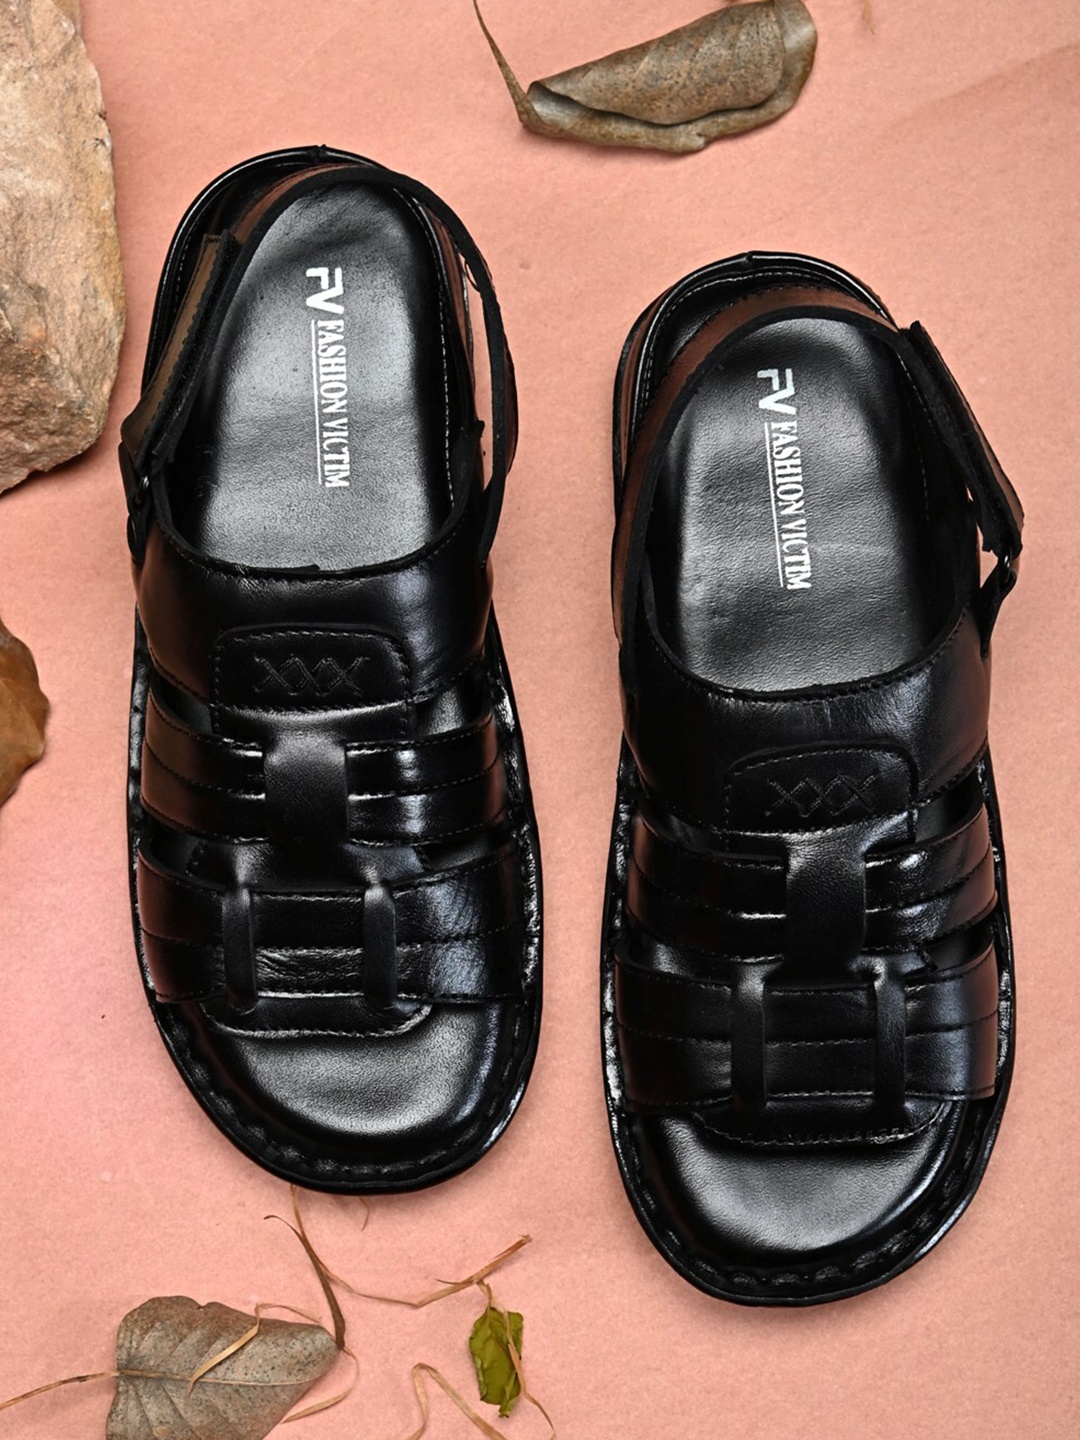 

Fashion Victim Men Black Leather Shoe-Style Sandals